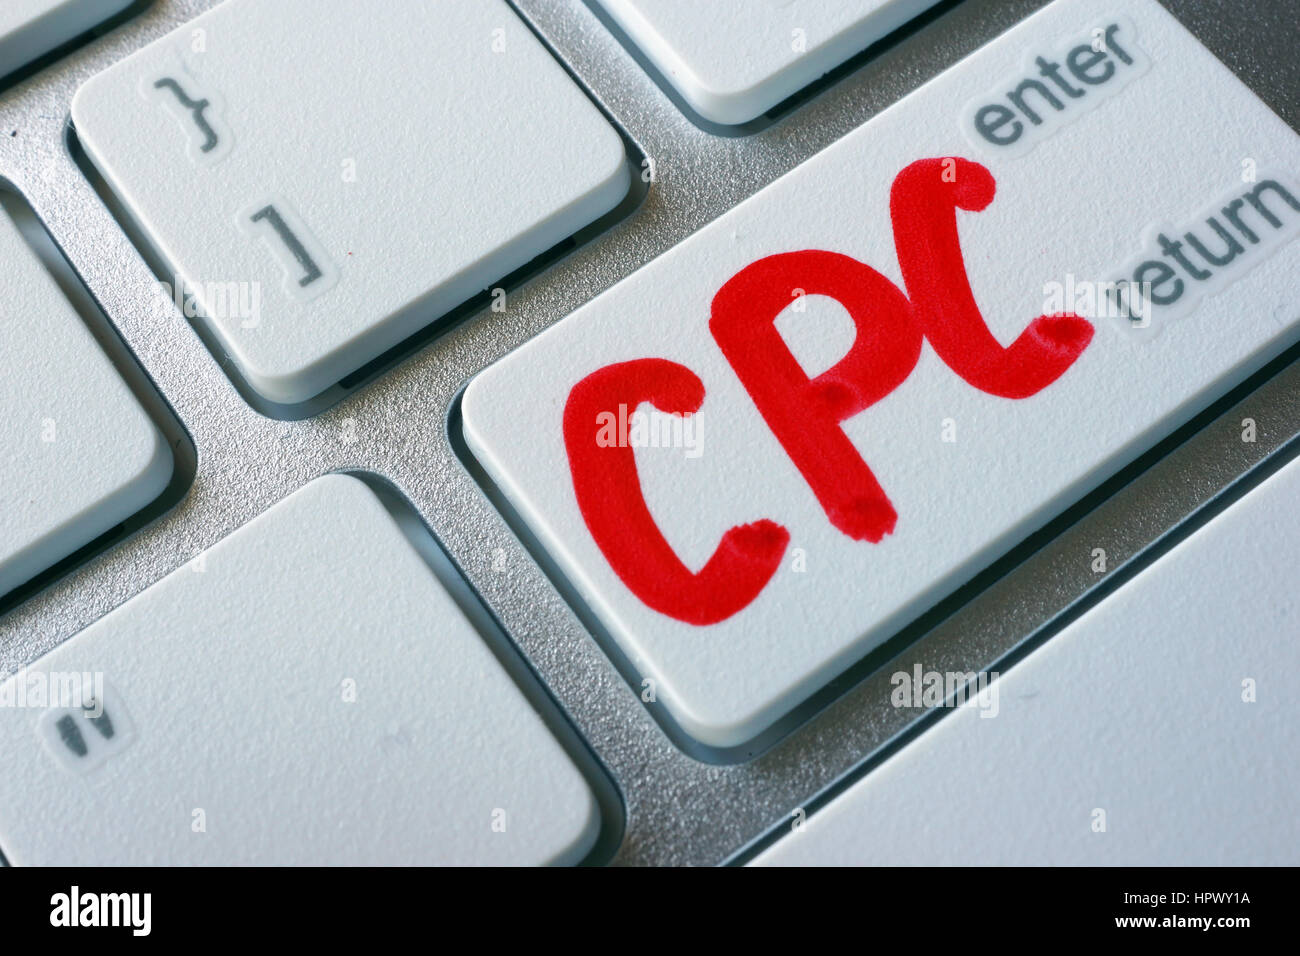 Mot CPC (coût par clic) écrit sur un clavier. Banque D'Images